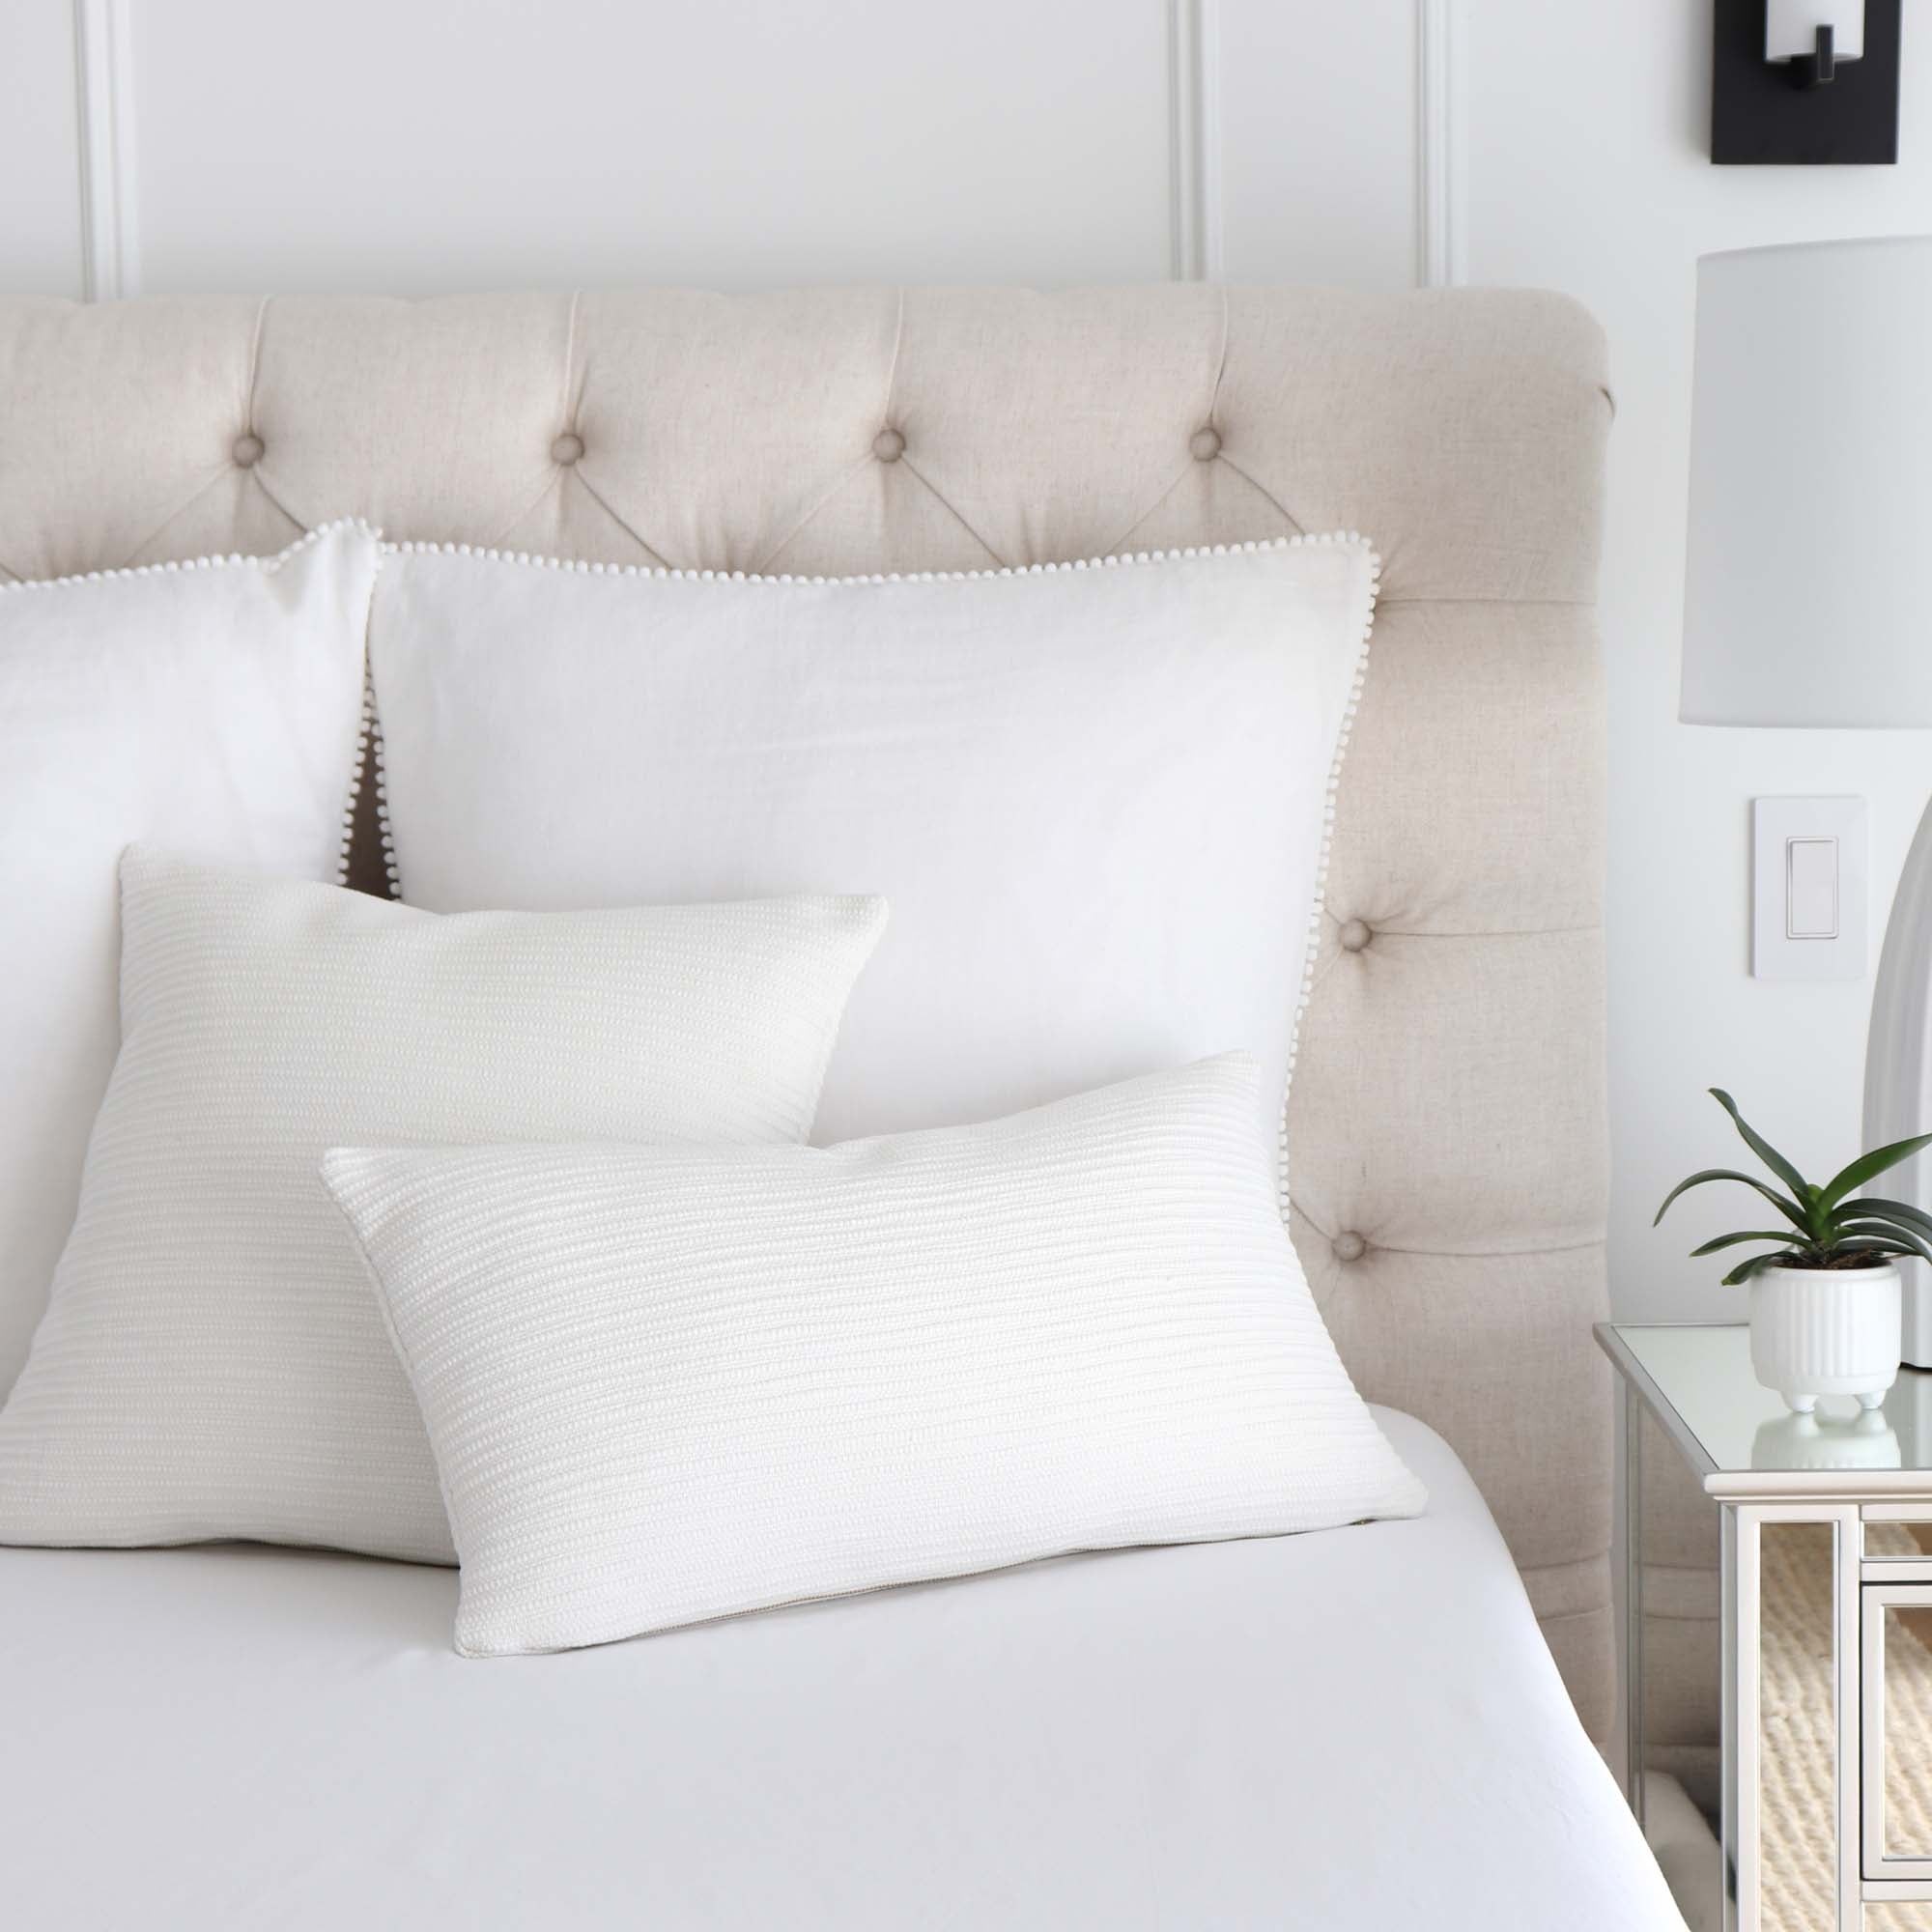 Zak + Fox Jibari Textured White Luxury Designer Throw Pillow Cover